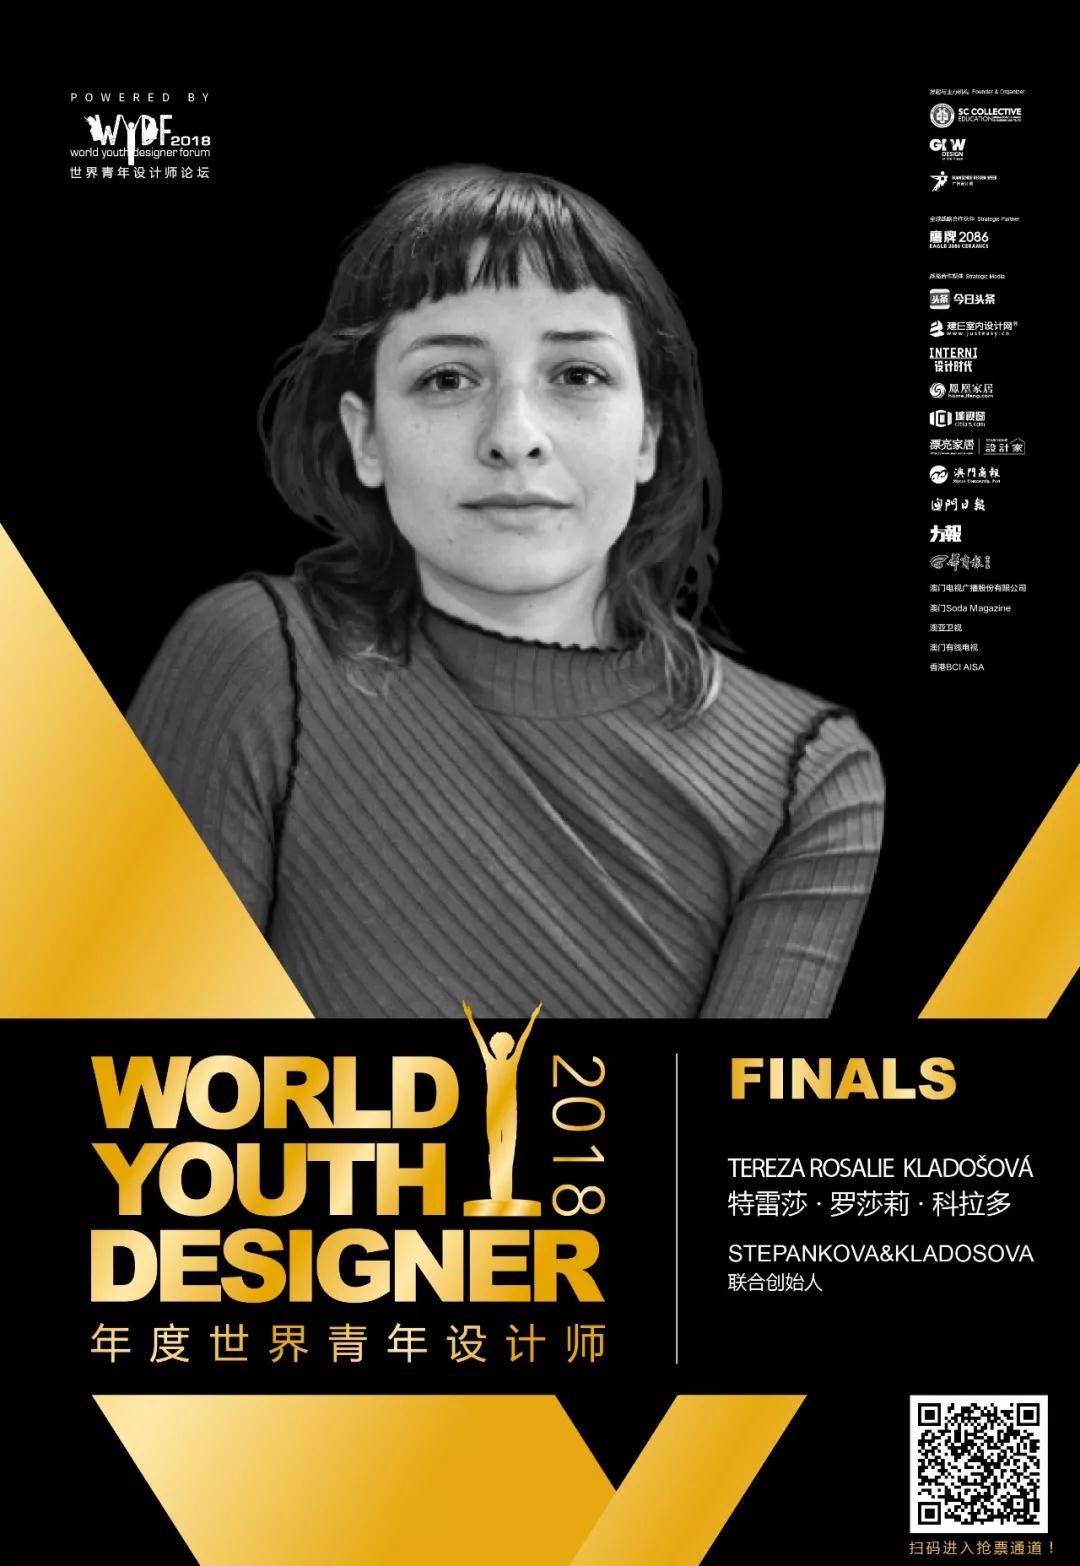 代表女性设计师发声的欧洲候选人Tereza Rosalie Kladoš，11月27日决战WYDF2018年度青年设计师(图4)